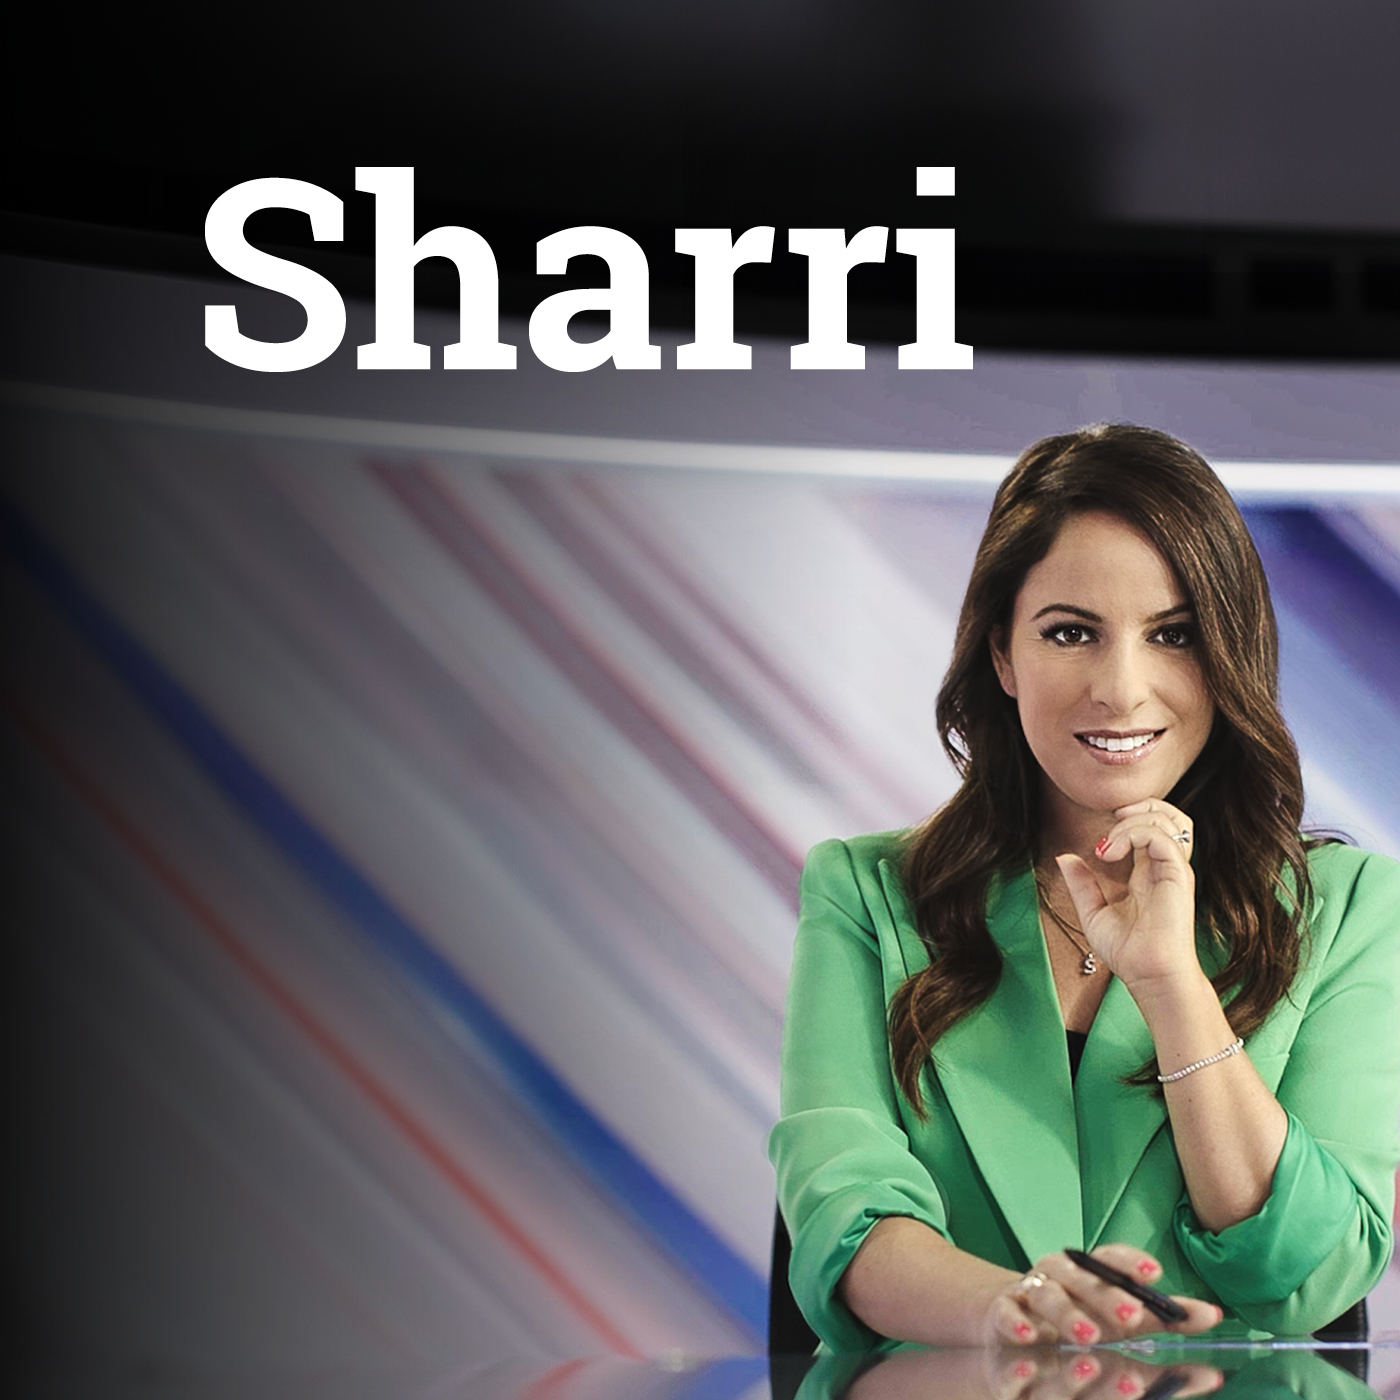 Sharri | 29 April